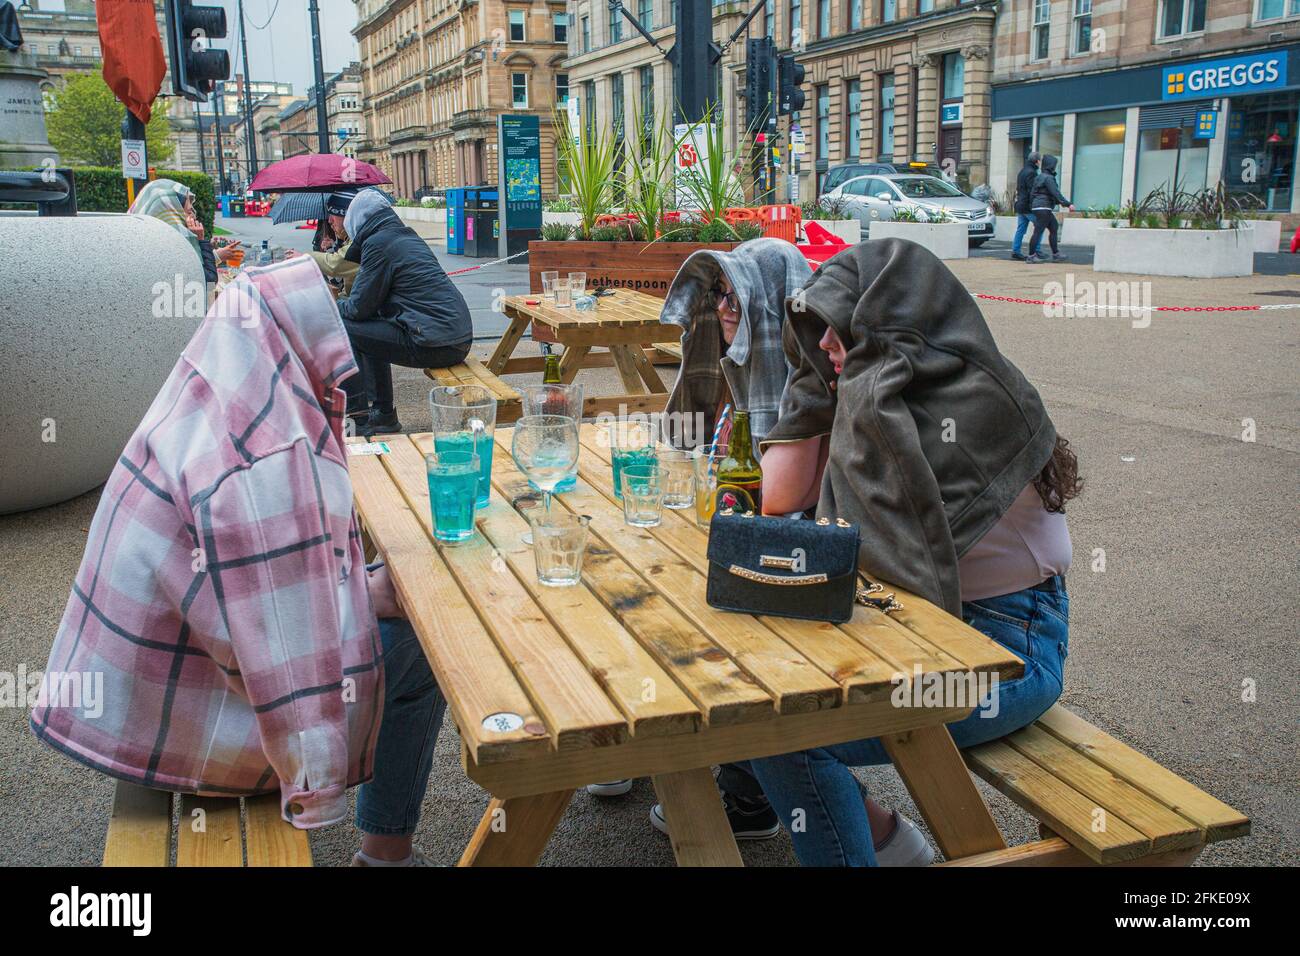 Grupo de jóvenes que beben en el centro de la ciudad de Glasgow, Escocia. Foto de stock